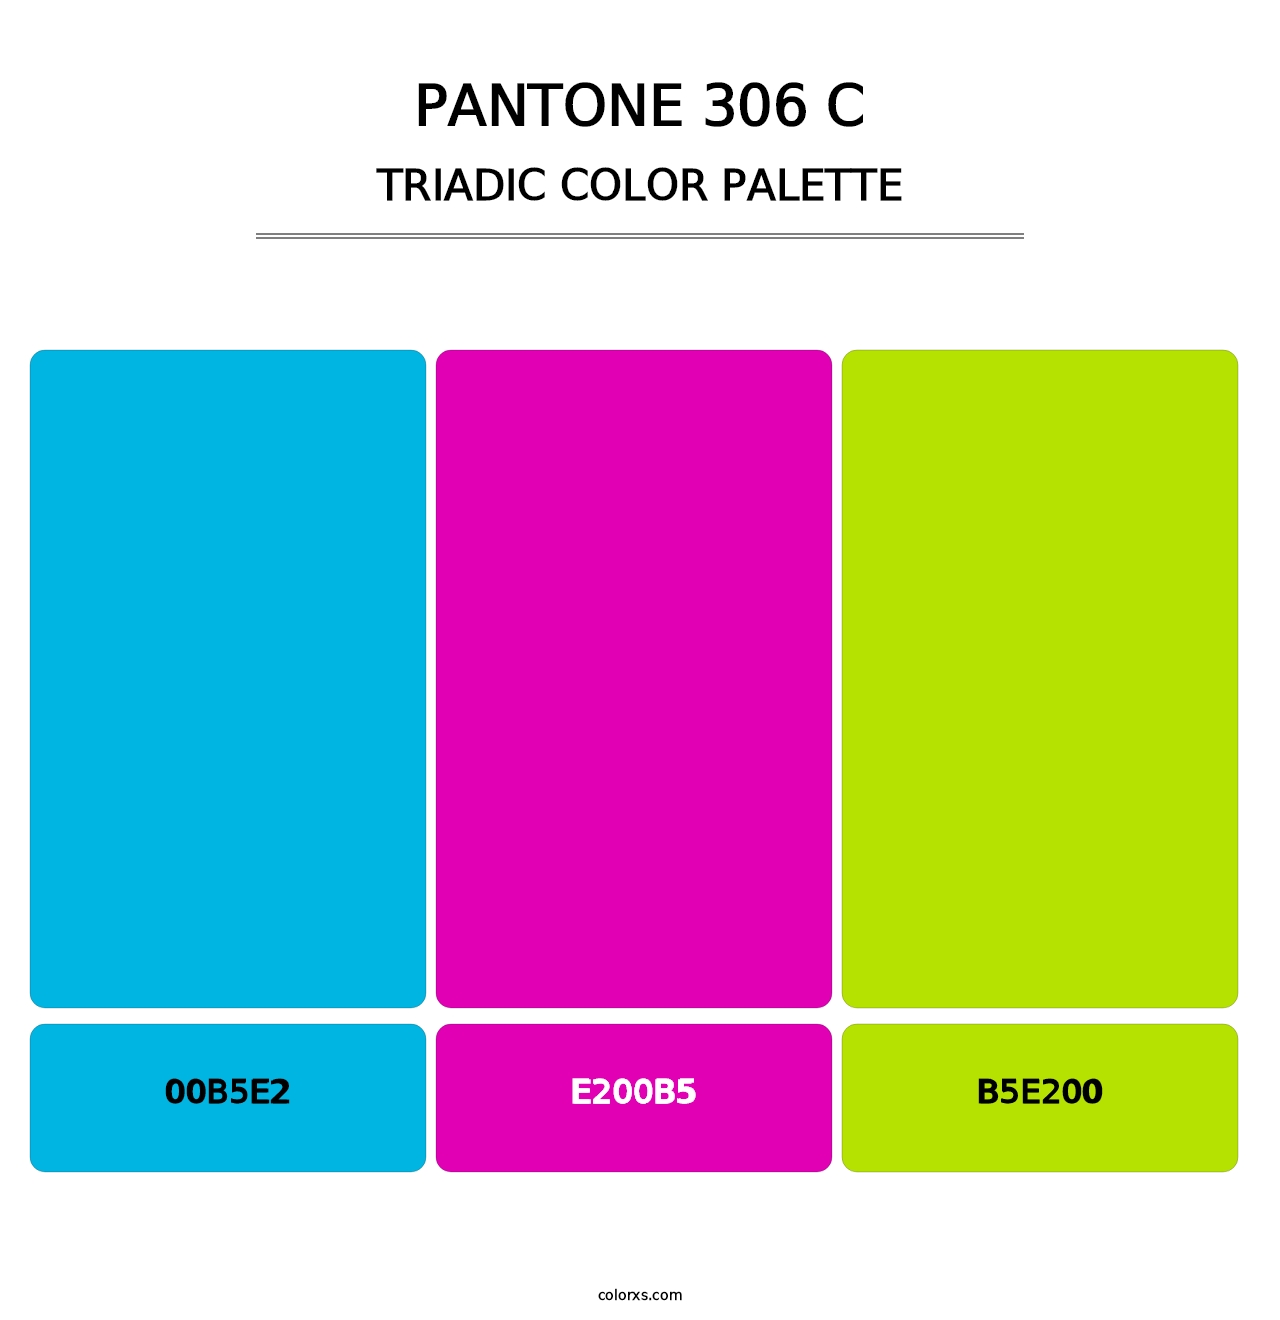 PANTONE 306 C - Triadic Color Palette